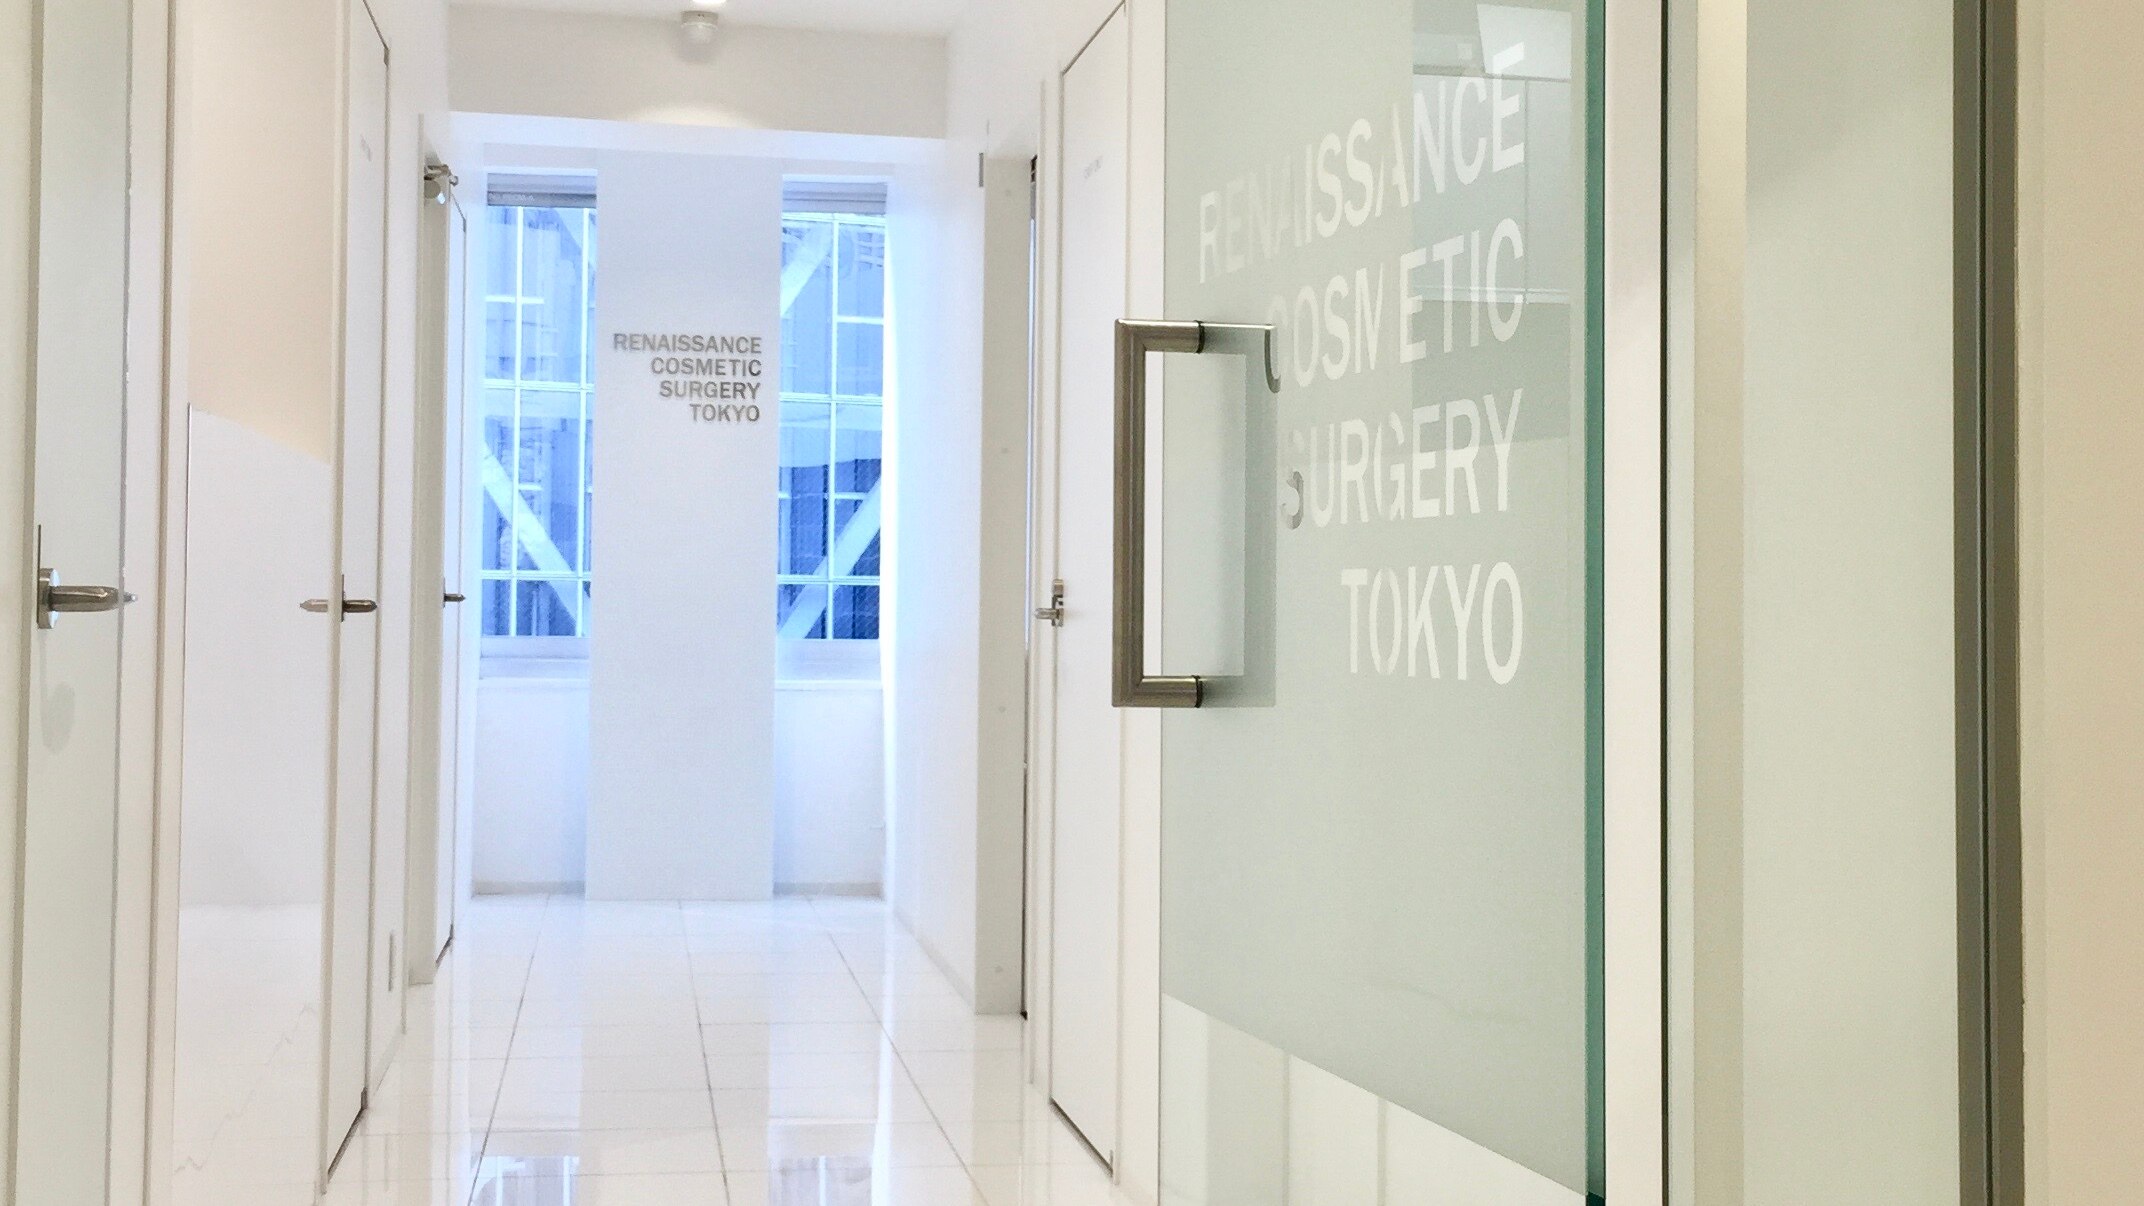 ルネッサンス美容外科医院 東京院の紹介画像